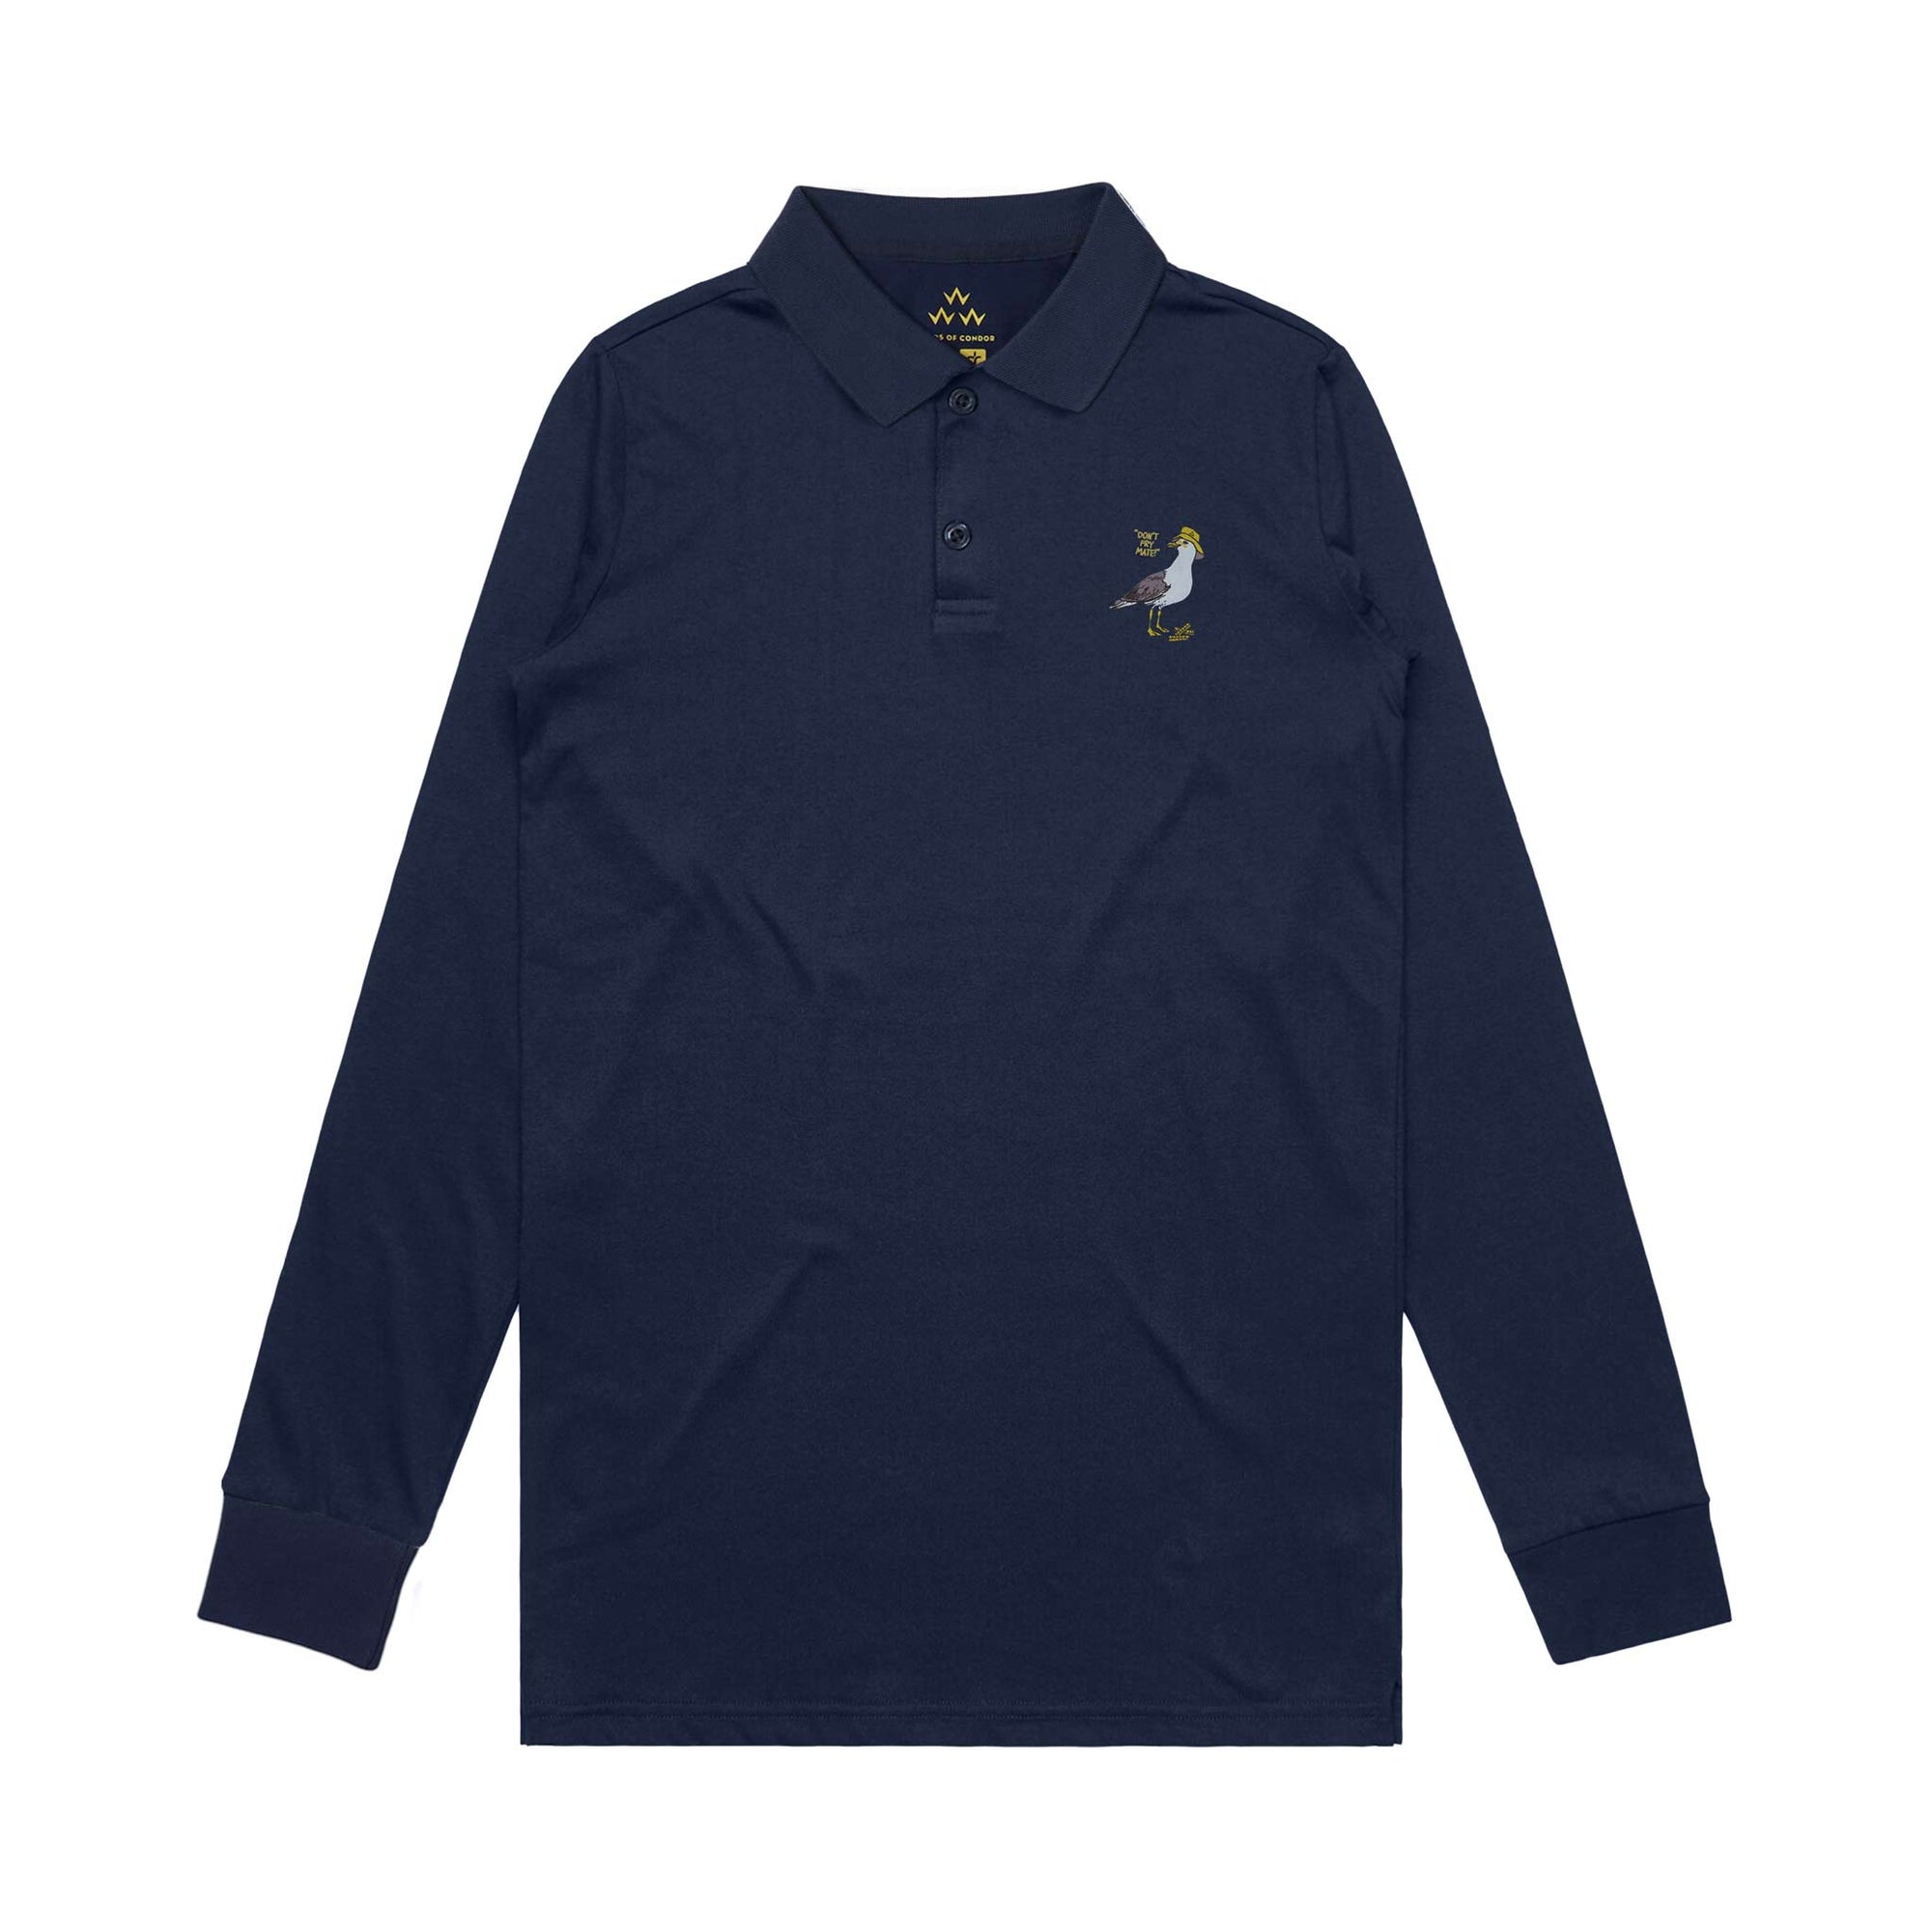 birds-of-condor-navy-blue-long-sleeve-sun-smart-golf-polo-shirt-front